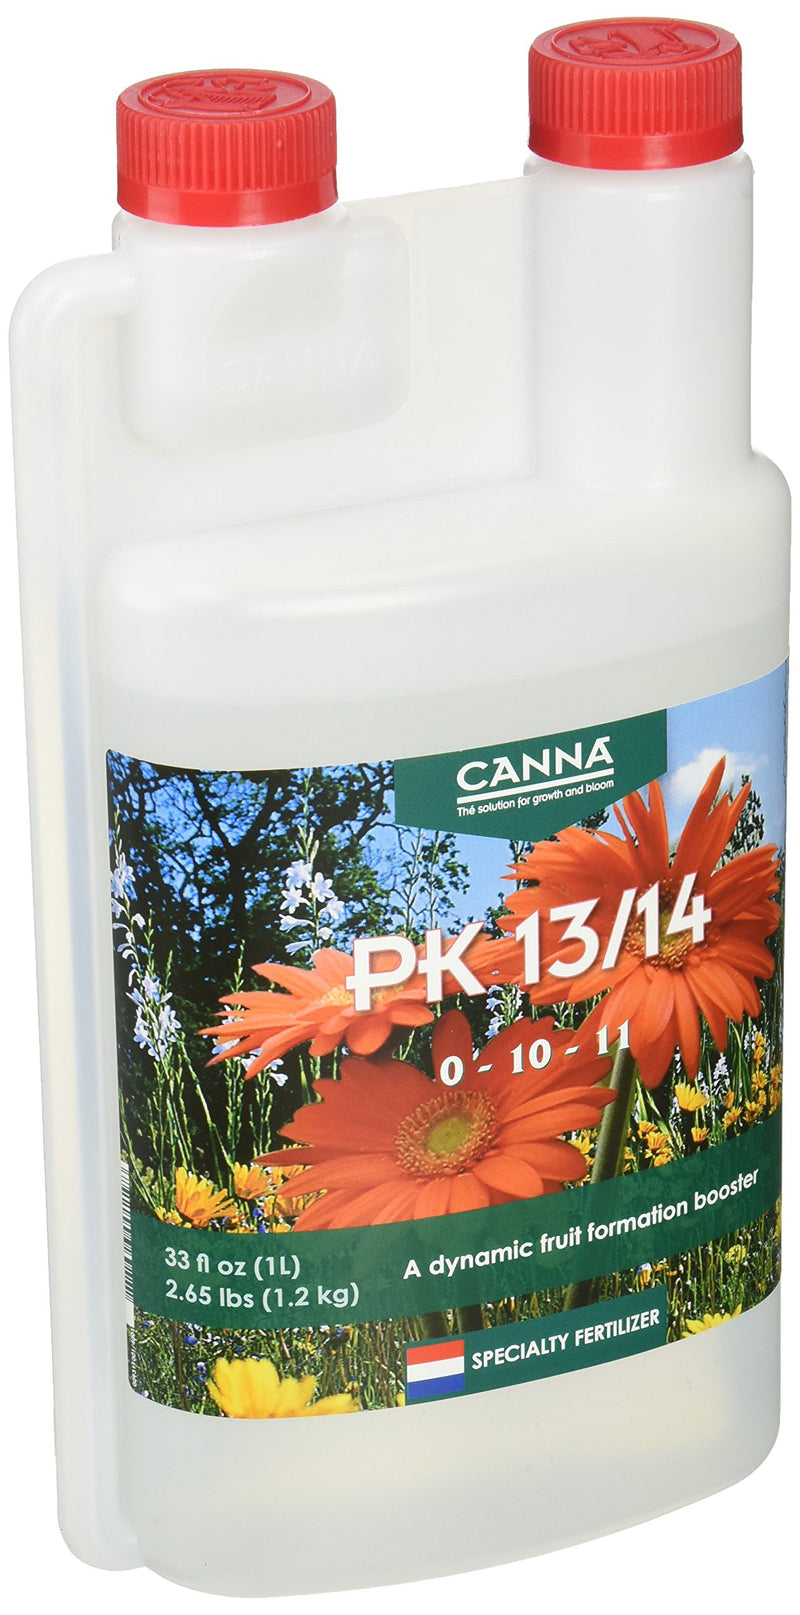 CANNA 1 L PK 13/14 Bud Phase Additive-0-10-11 NPK Ratio 9311025